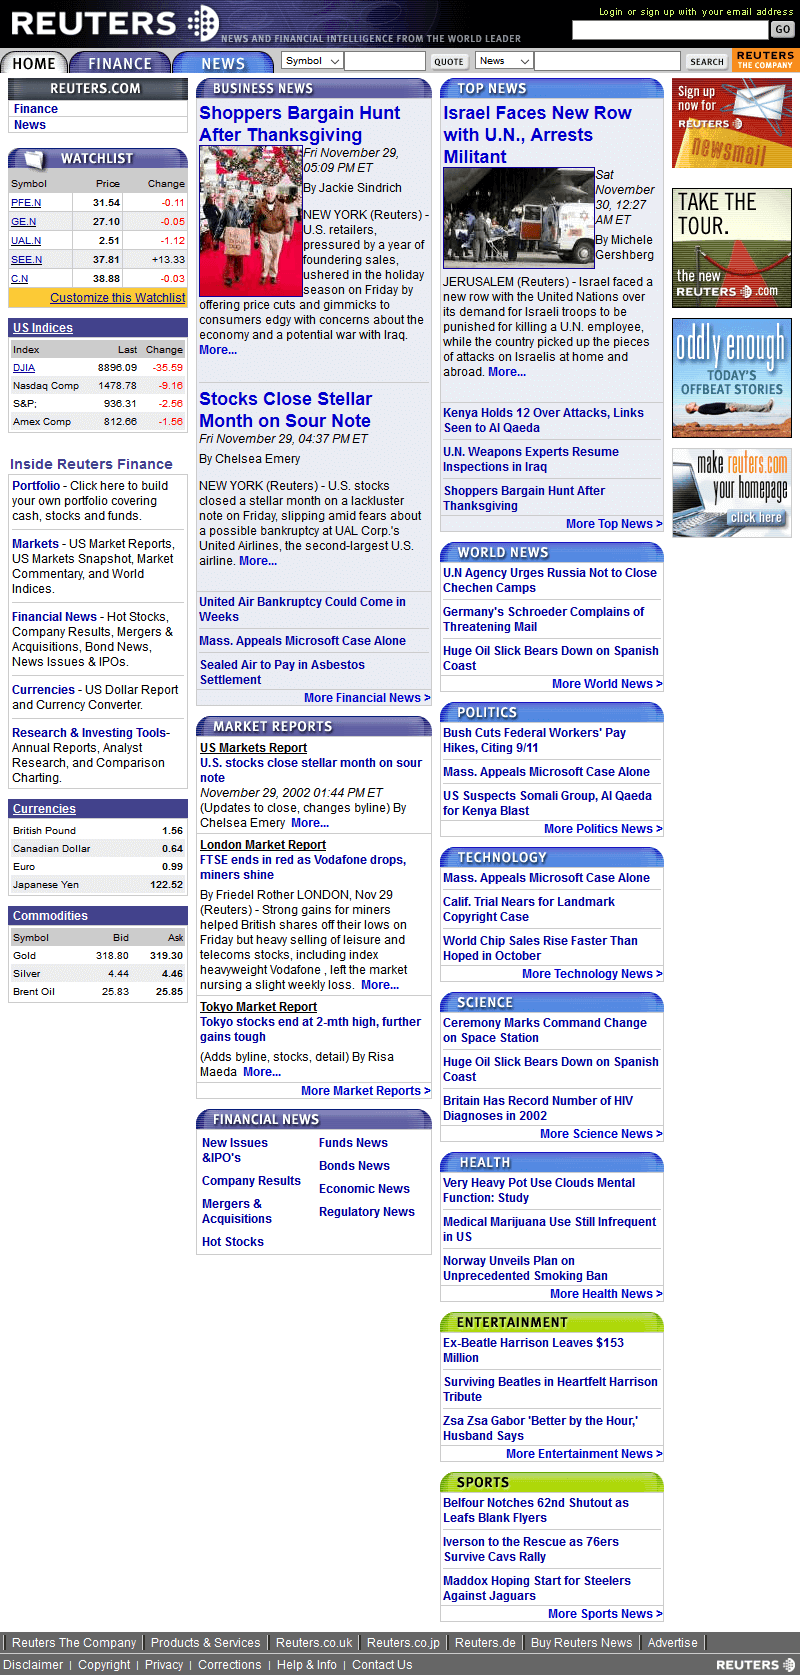 Reuters website in 2002